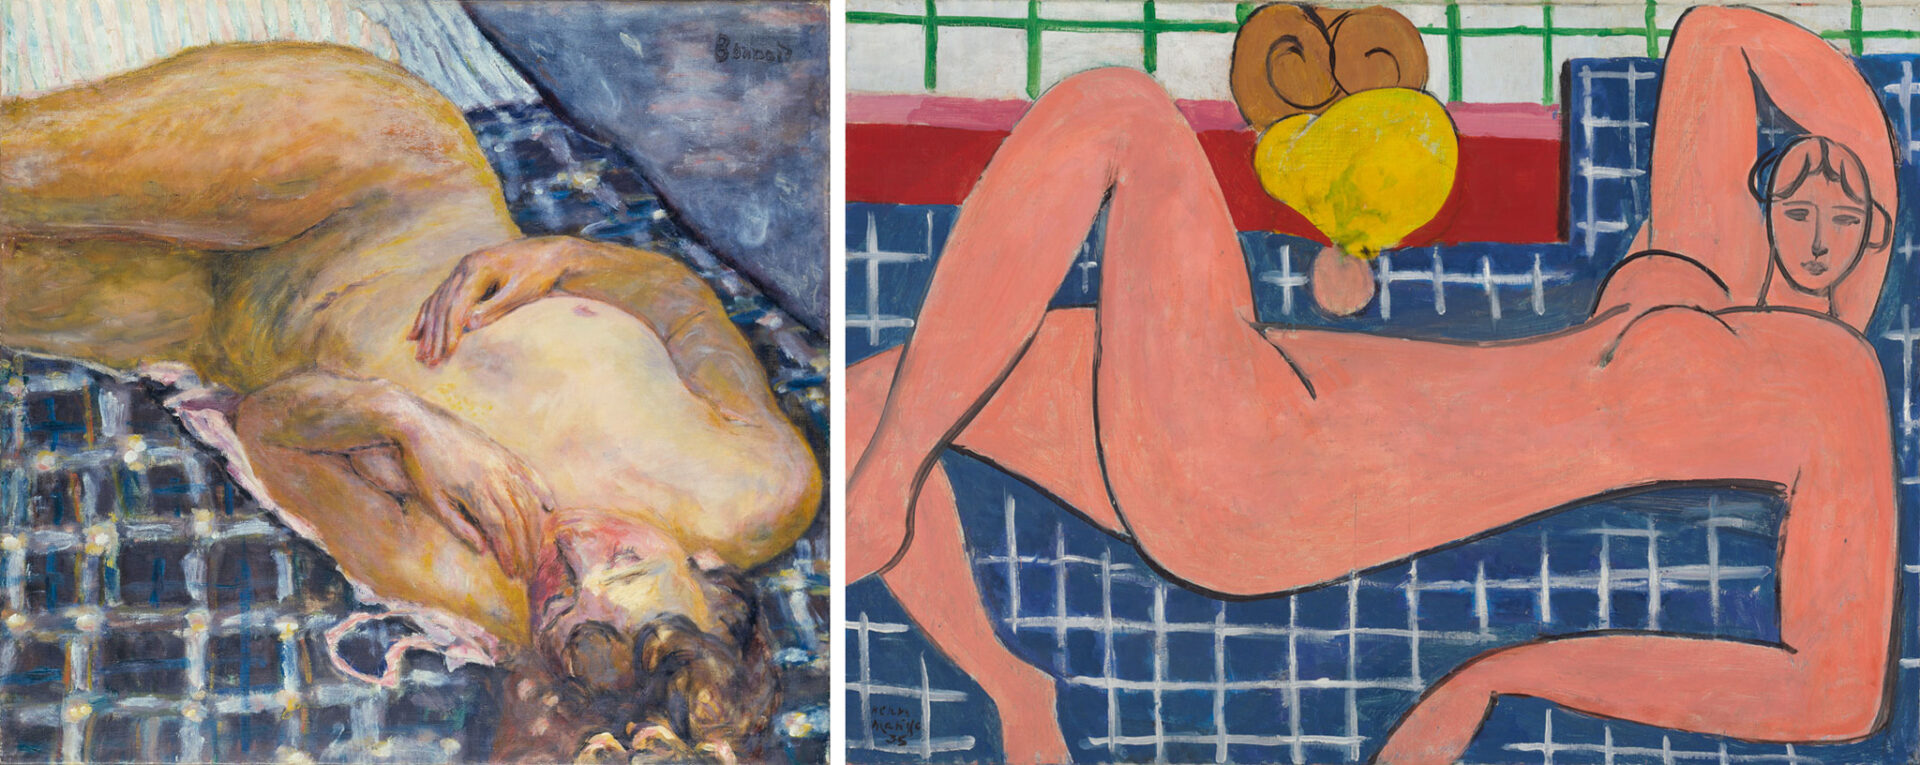 Bonnard_Matisse